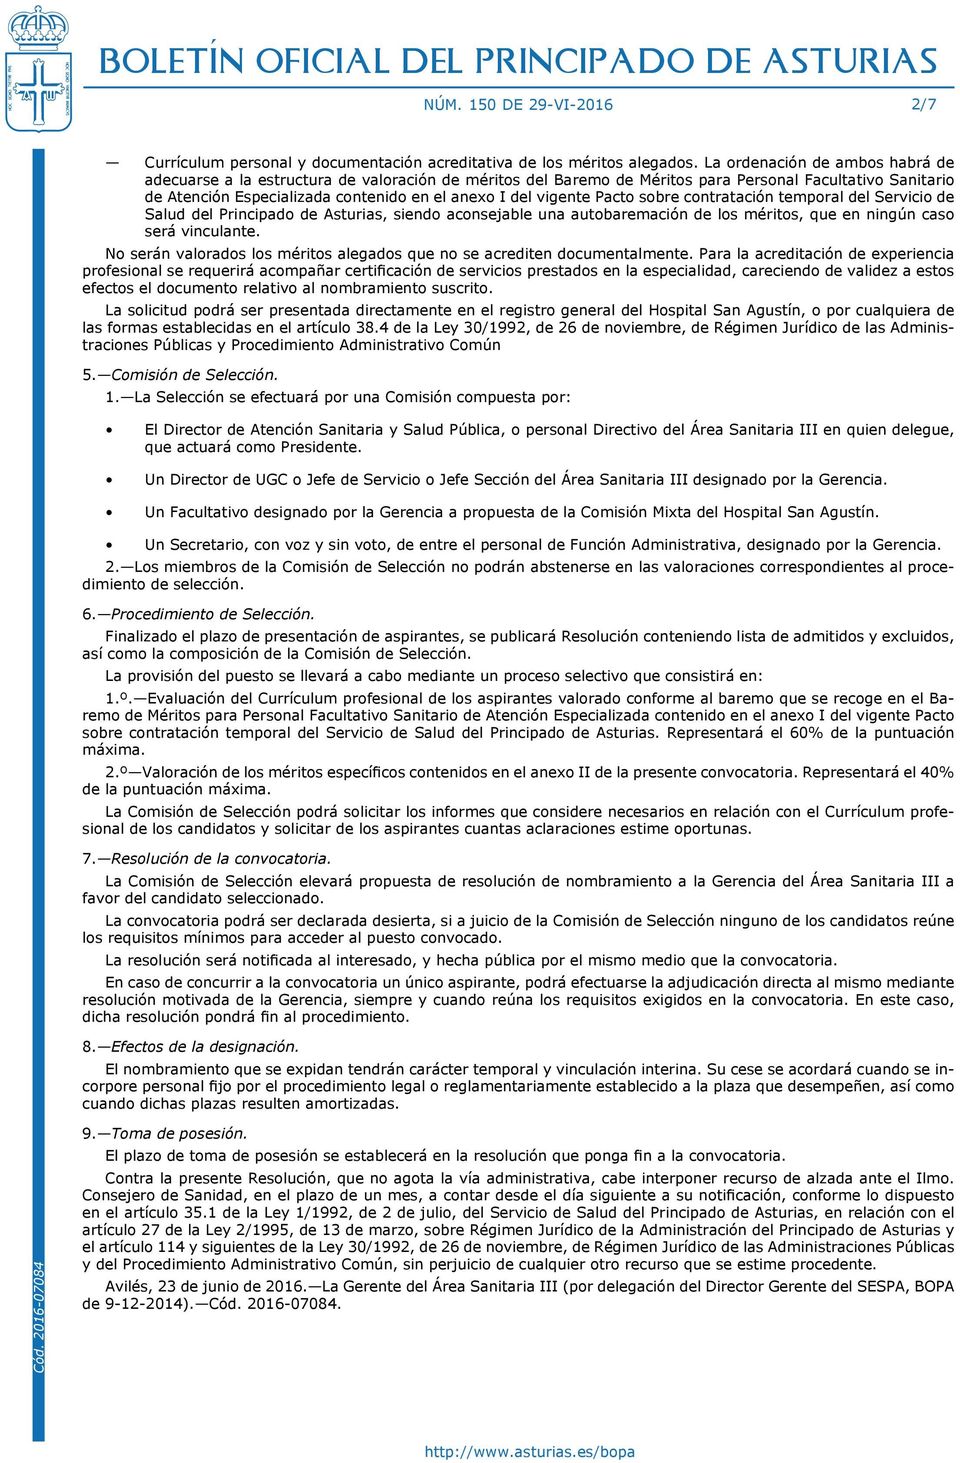 vigente Pacto sobre contratación temporal del Servicio de Salud del Principado de Asturias, siendo aconsejable una autobaremación de los méritos, que en ningún caso será vinculante.